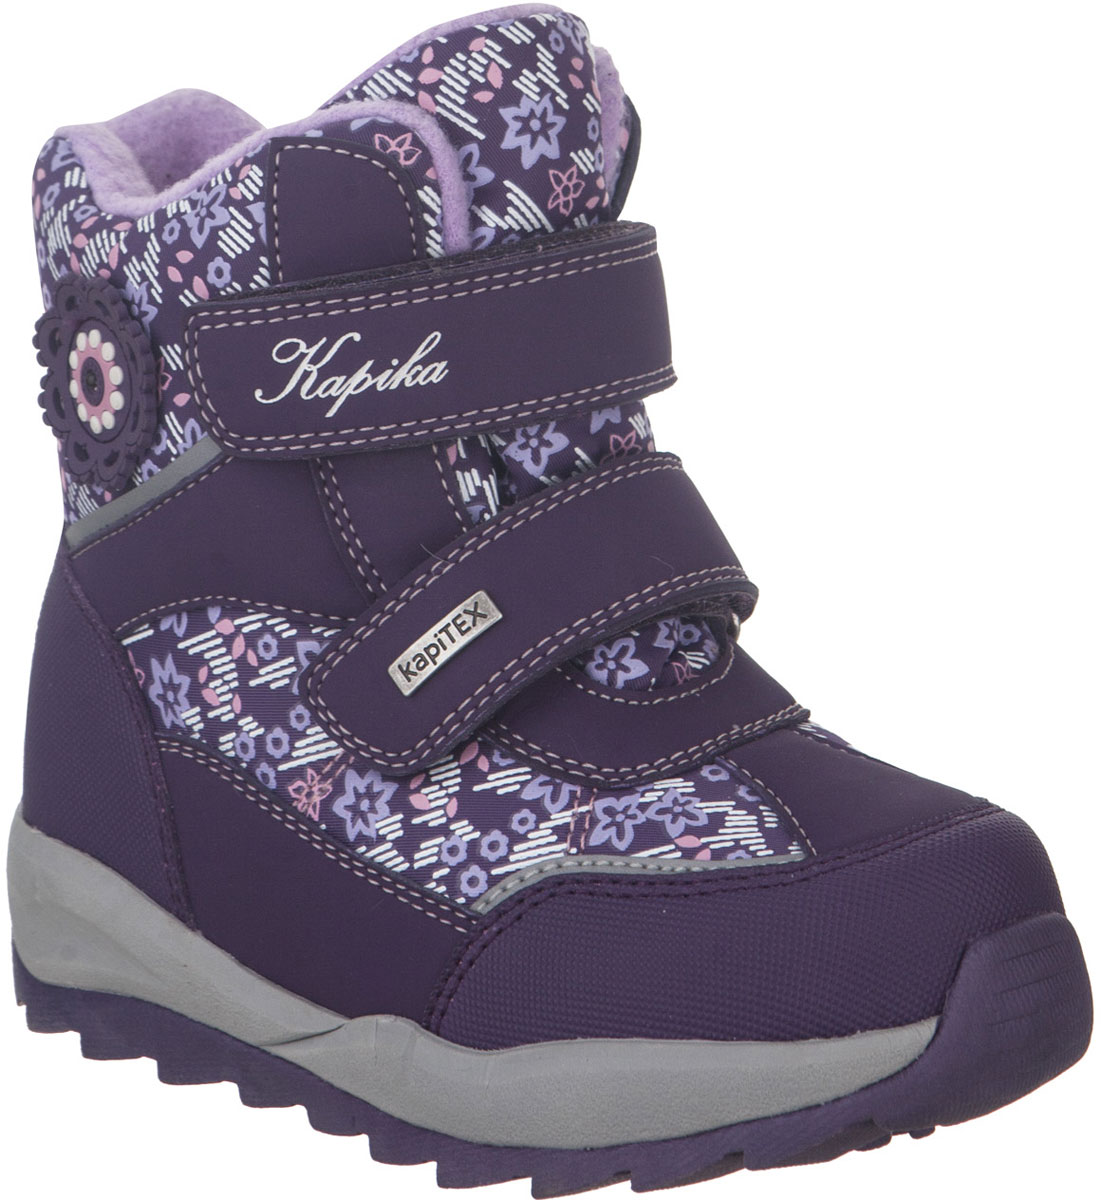 Ботинки для девочки Kapika, цвет: фиолетовый. 42245-2. Размер 31